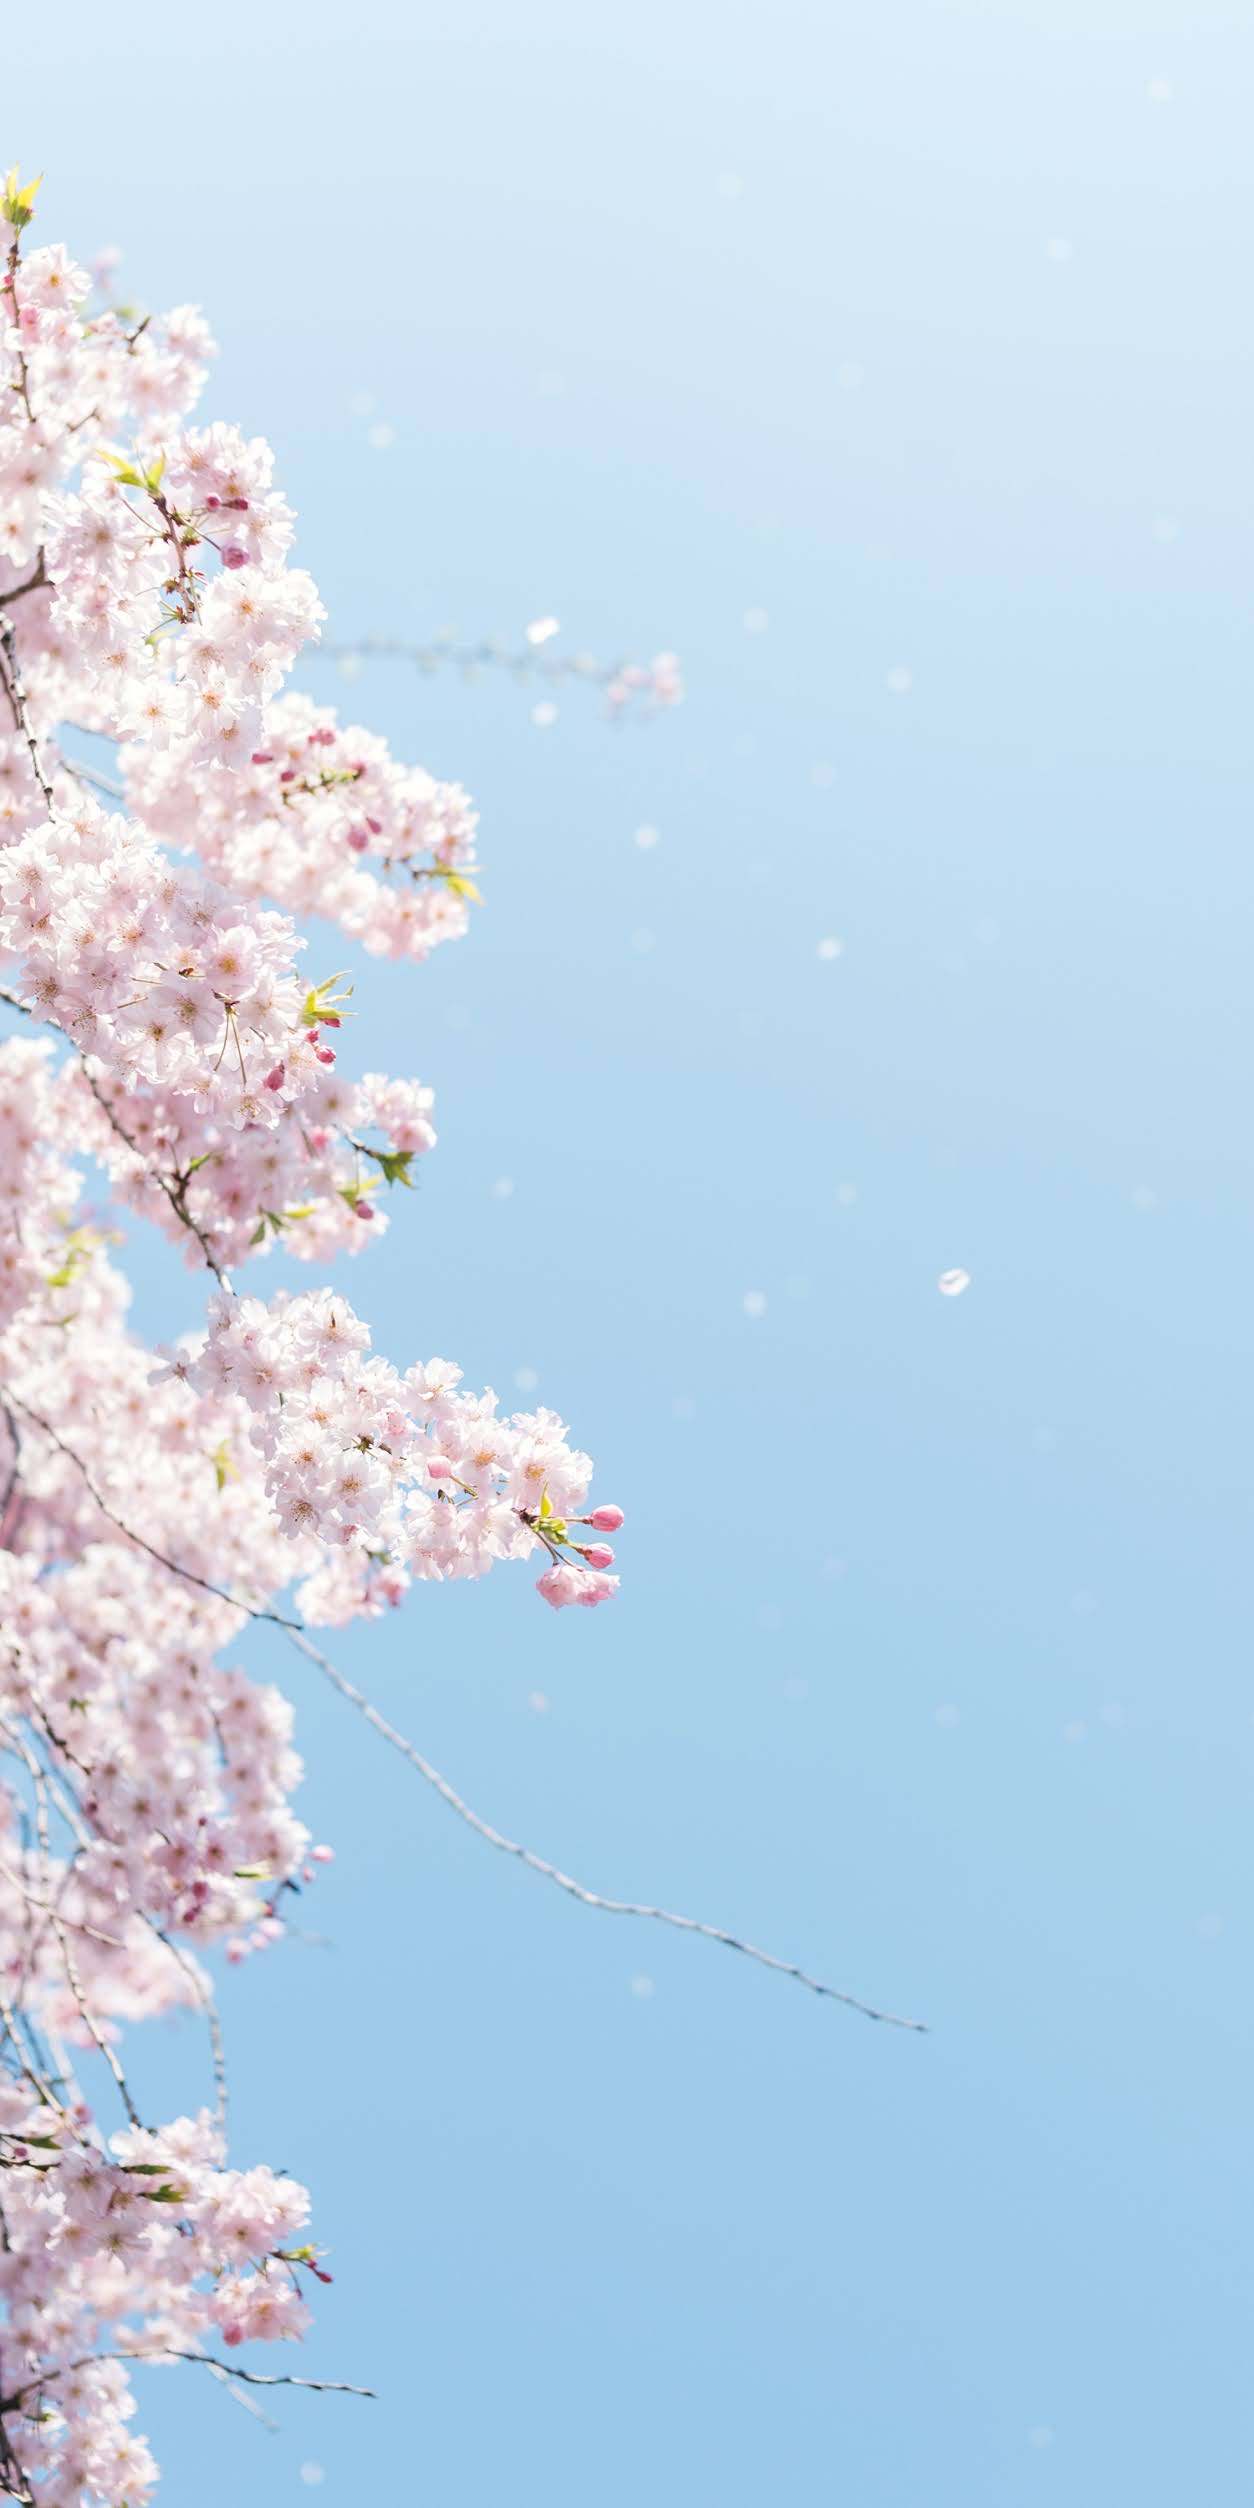 Hoa anh đào: Hãy cùng chiêm ngưỡng vẻ đẹp tuyệt vời của những cành hoa anh đào rực rỡ trên nền trời xanh. Hình ảnh này sẽ khiến bạn cảm thấy thư thái và yên bình, như sống tách biệt với cuộc sống bận rộn và ồn ào.